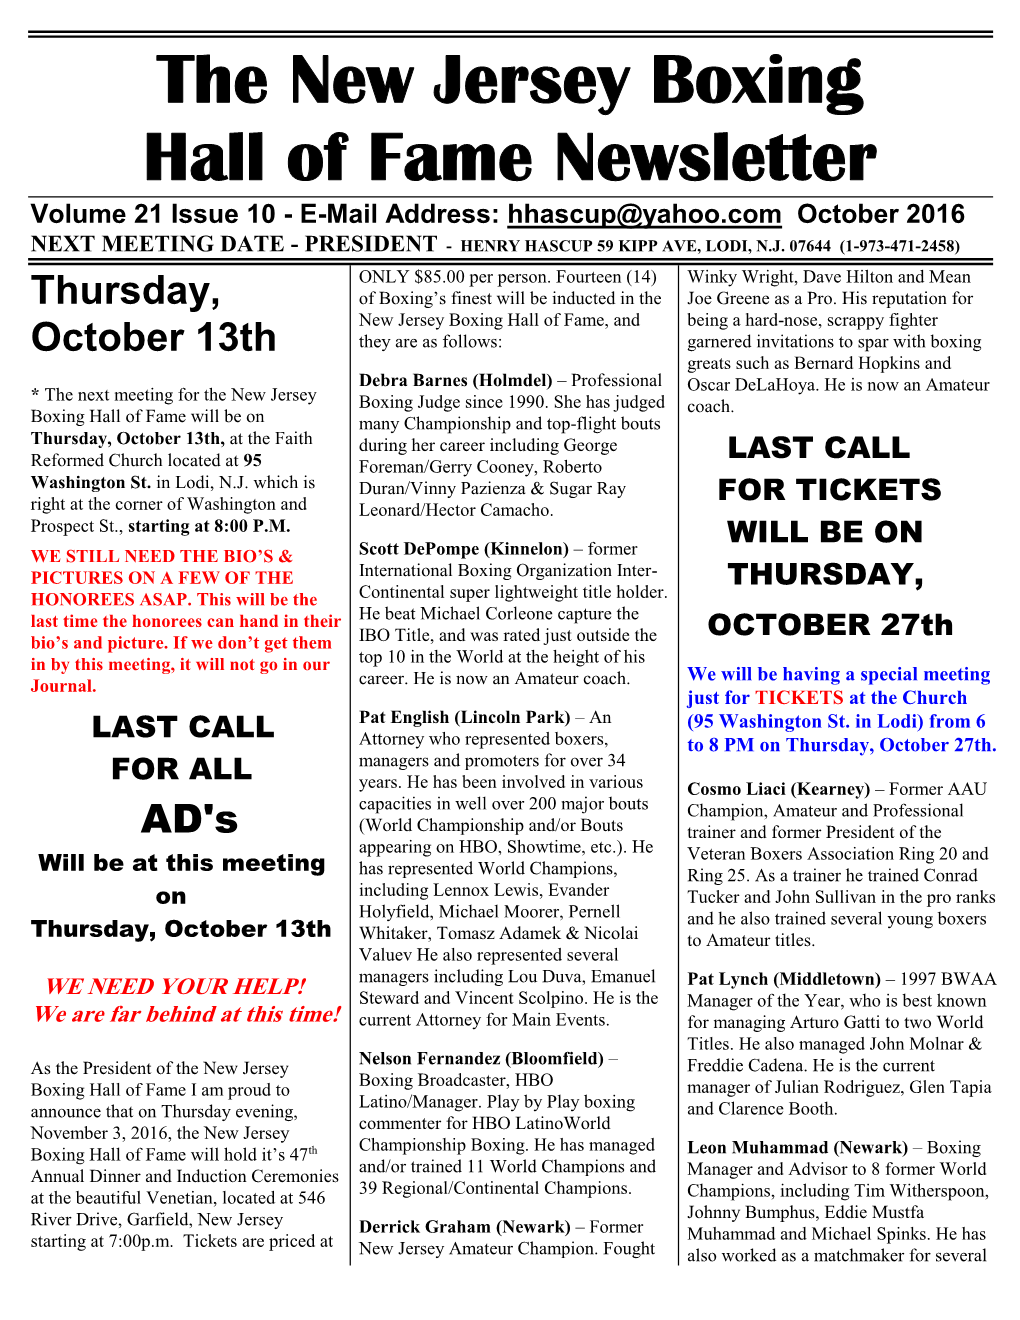 N.J. Boxing Hall of Fame Newsletter October 2016